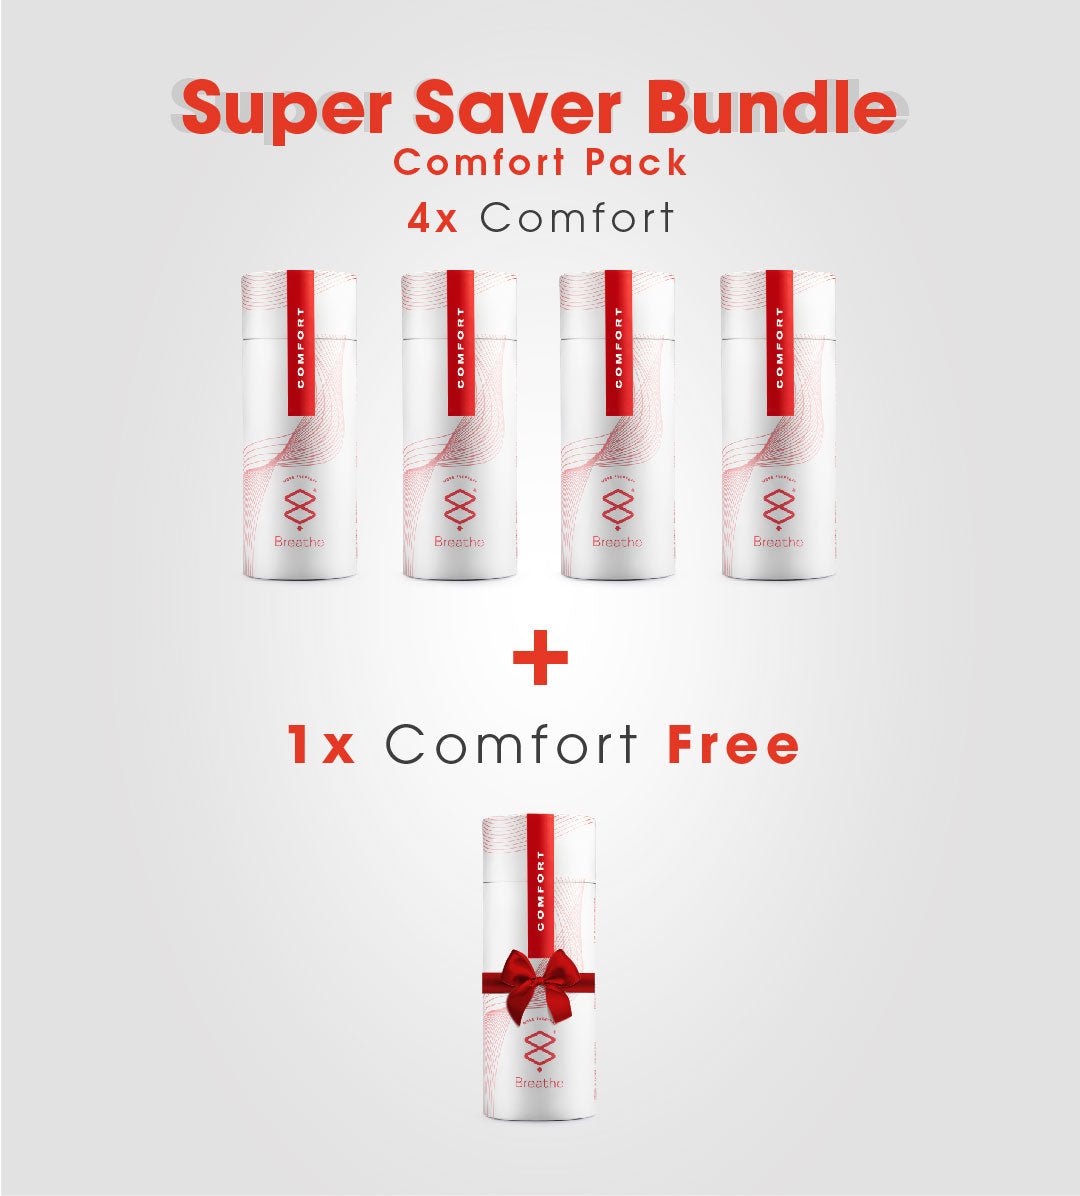 Super Saver Bundle Comfort Pack